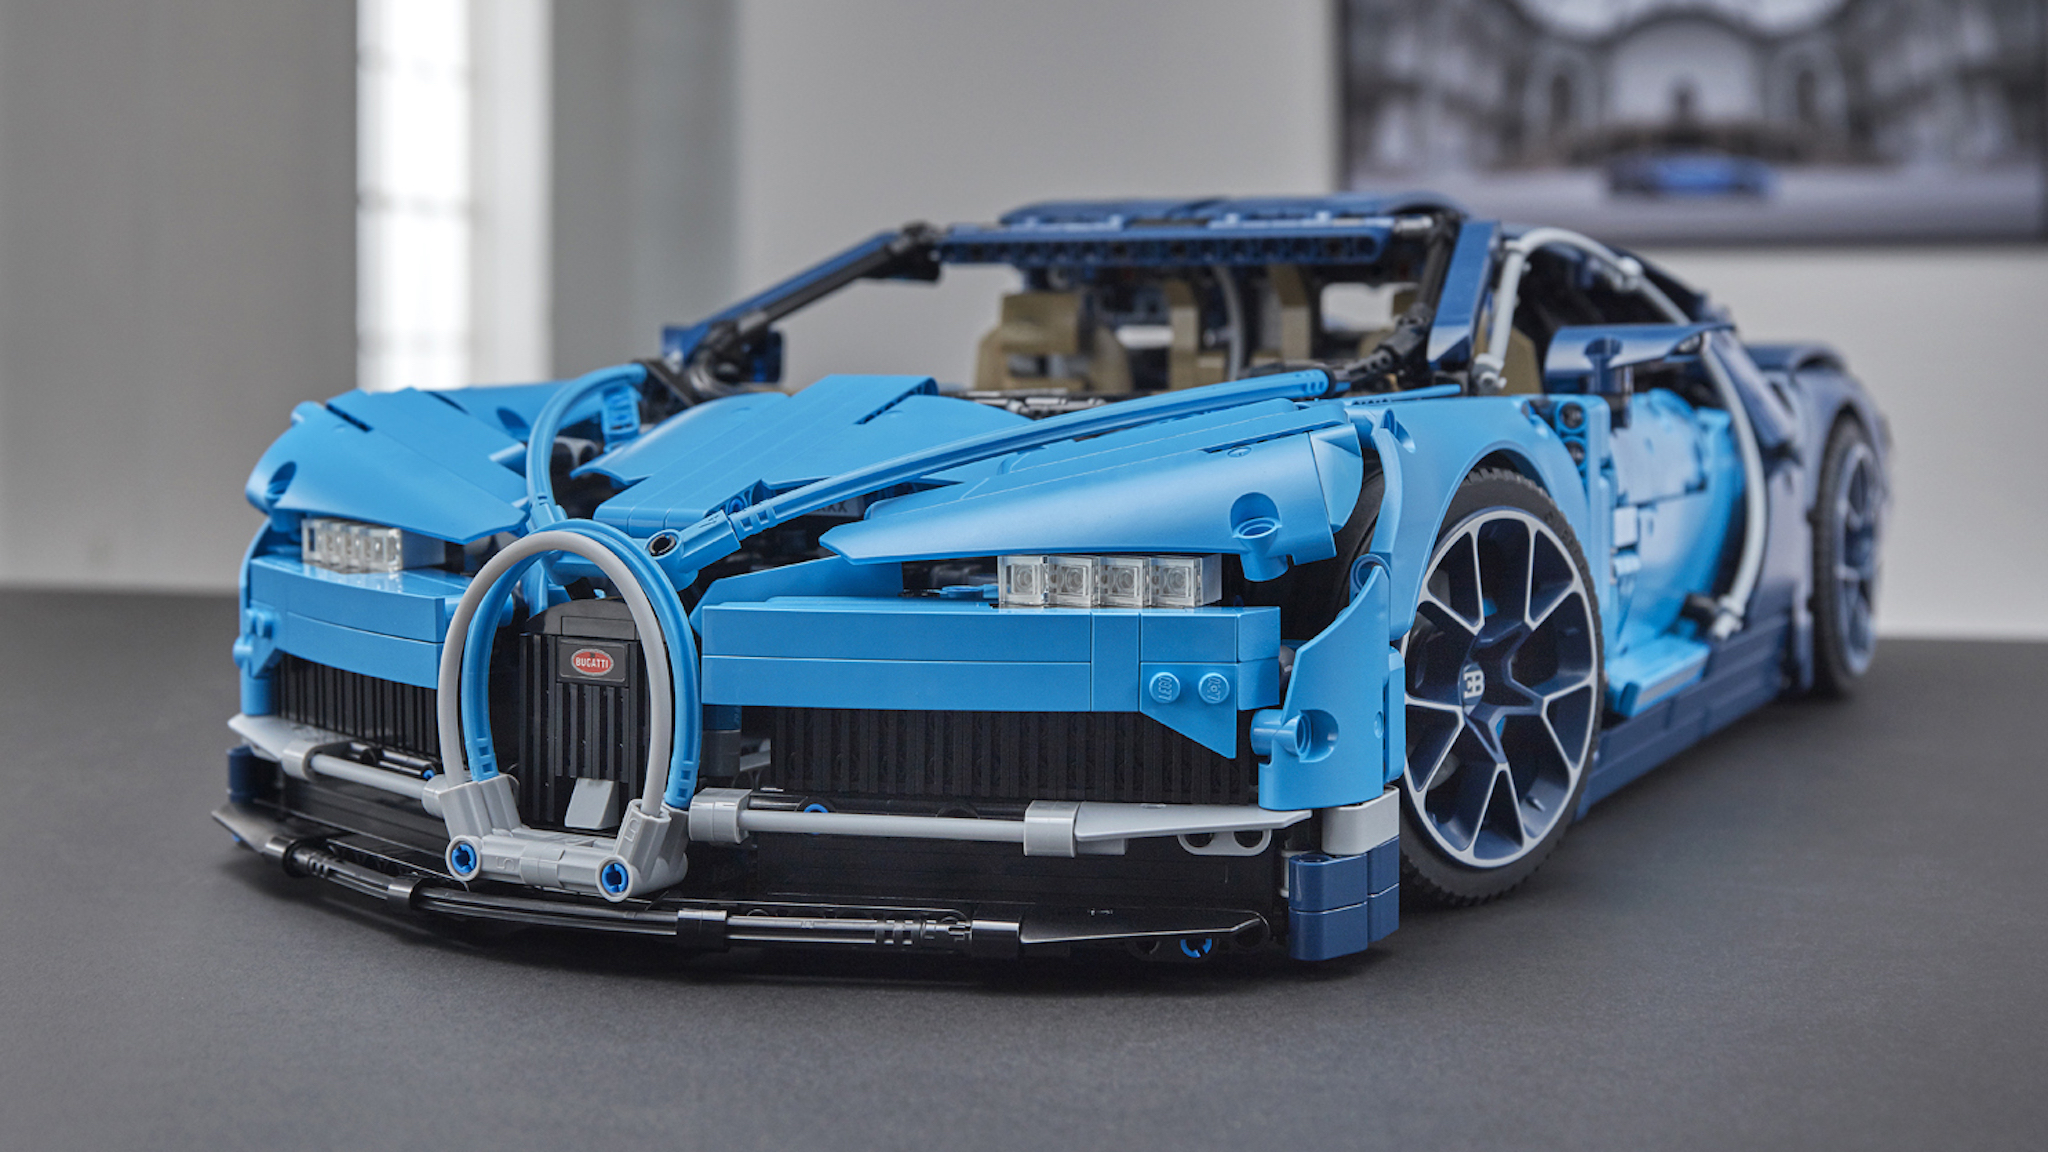 Mô Hình Nhựa 3D Lắp Ráp Technic Siêu Xe Đua Bugatti Chiron KK6890 4031  mảnh 18  LG0084  ArtPuzzlevn